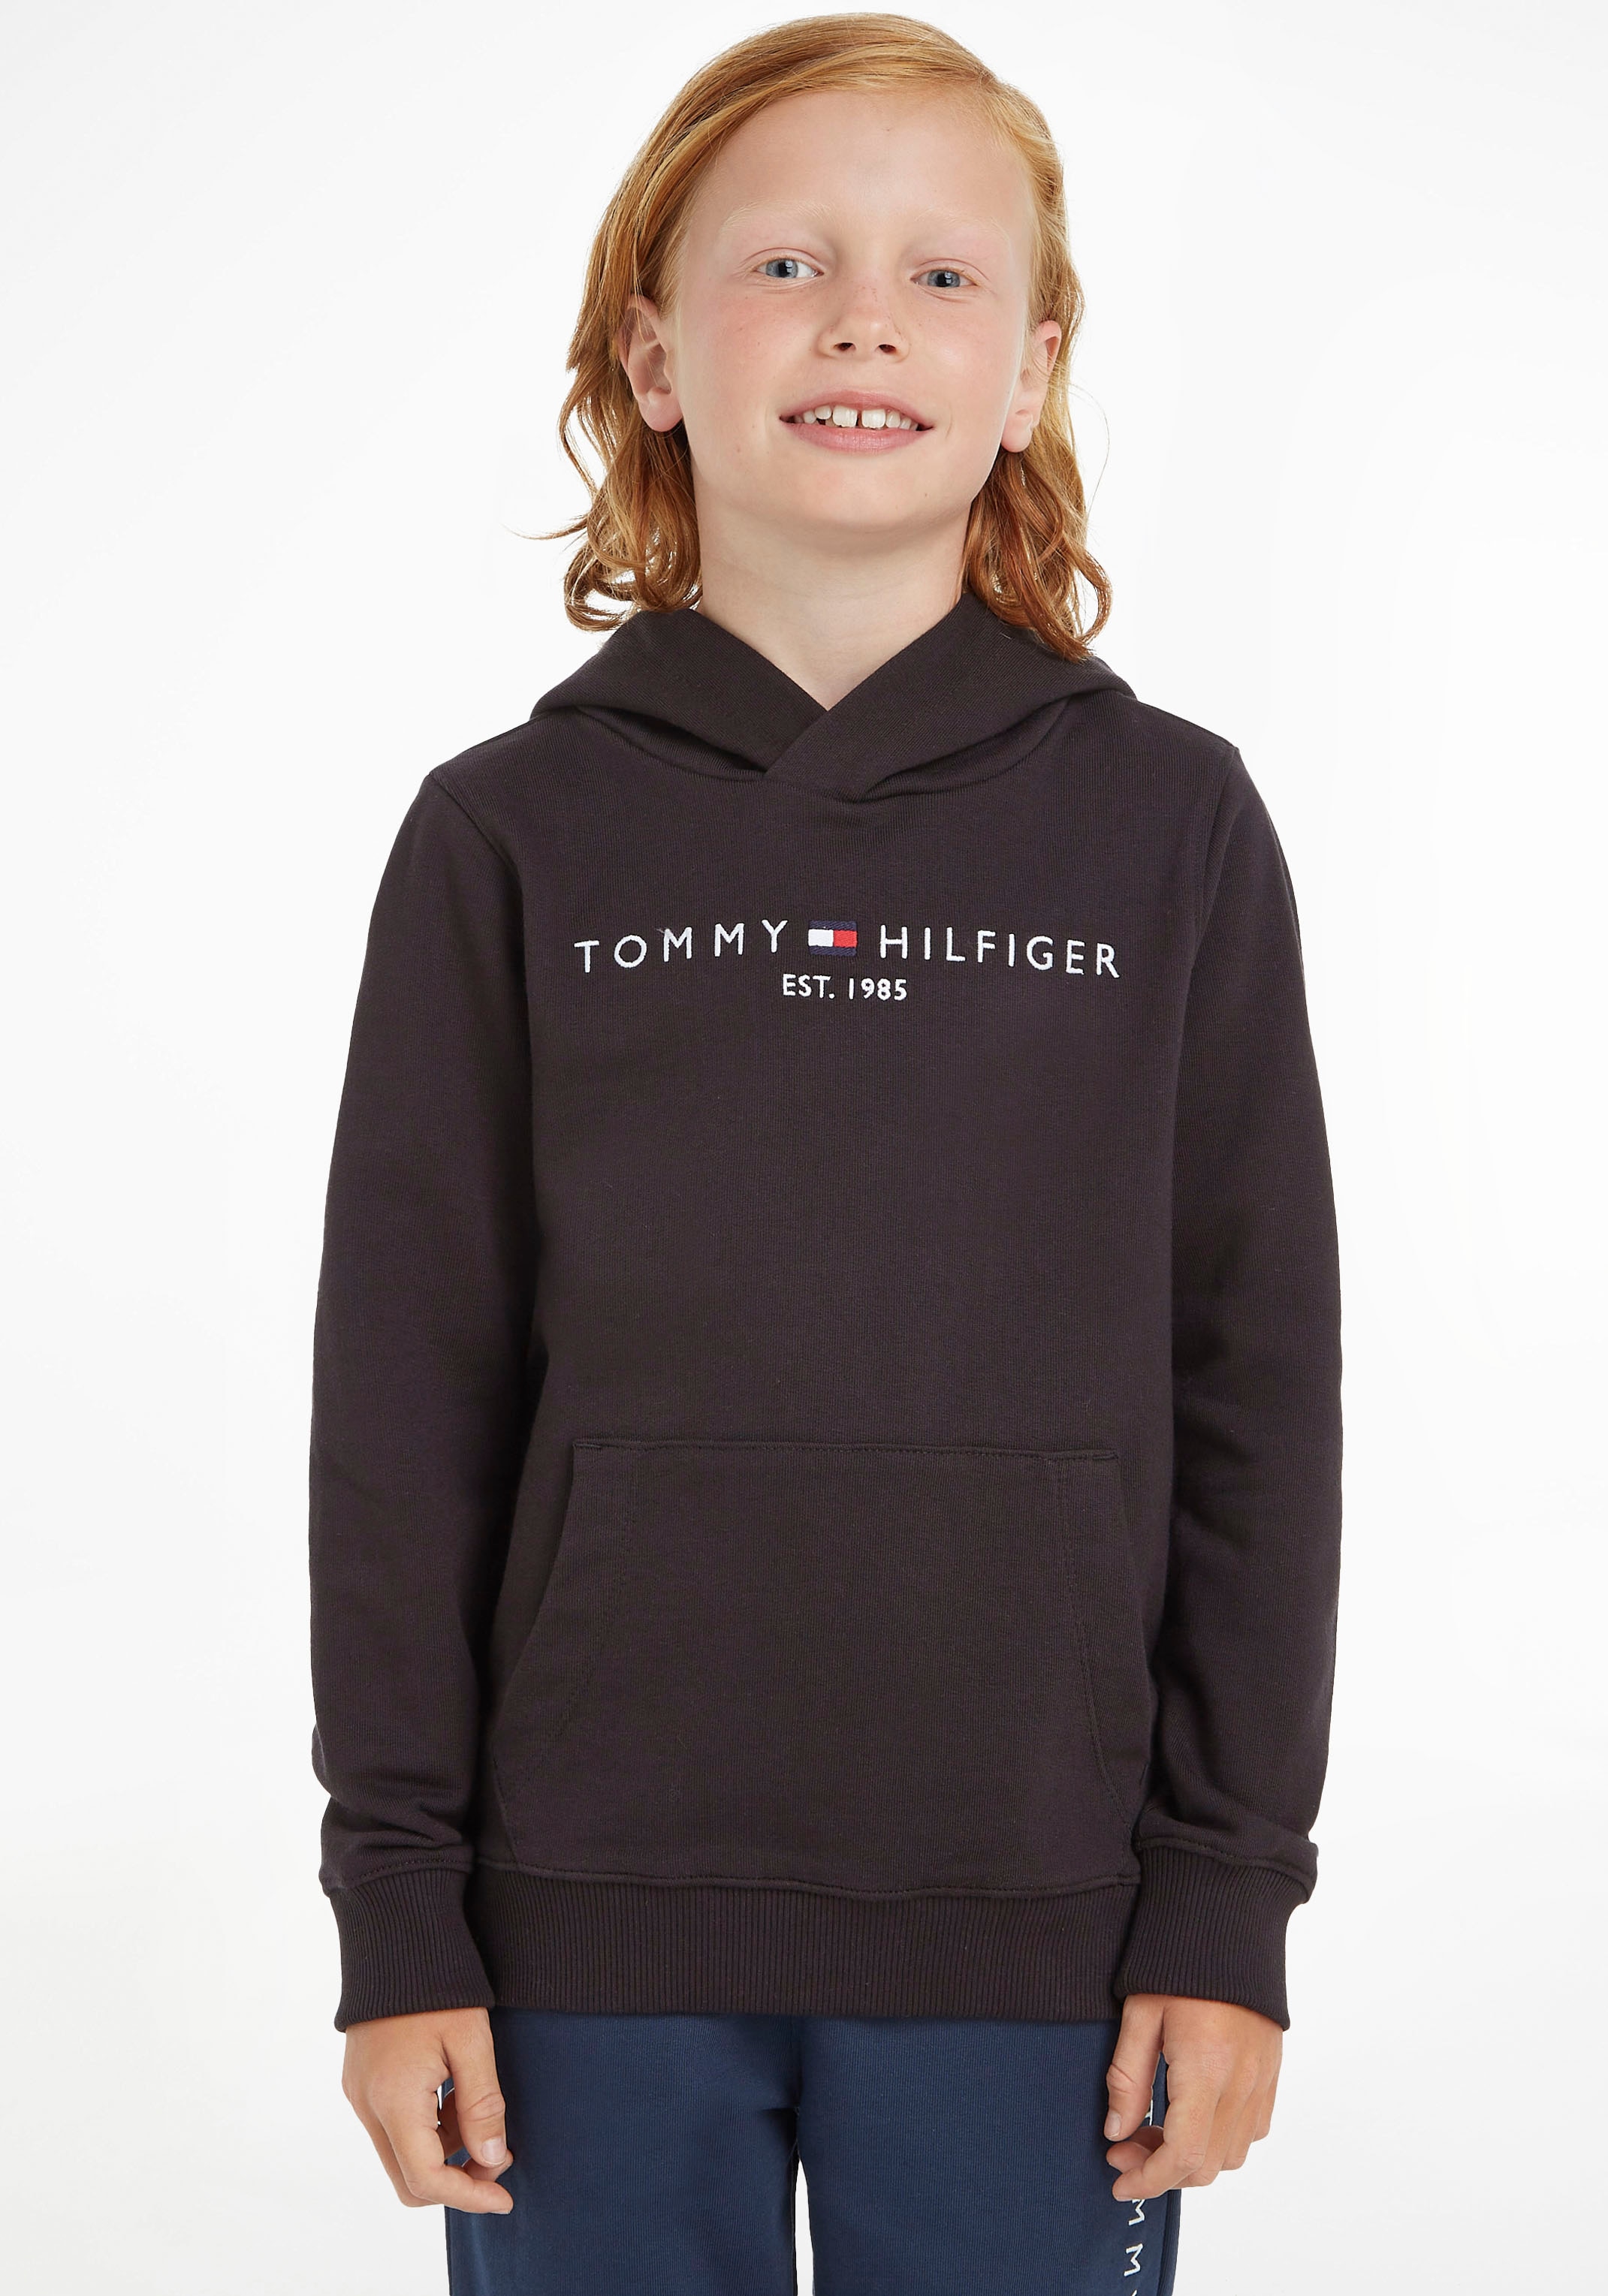 ✌ Tommy Junior Hilfiger Jungen HOODIE«, »ESSENTIAL ligne Mädchen Kids en Kapuzensweatshirt MiniMe,für Kinder Acheter und